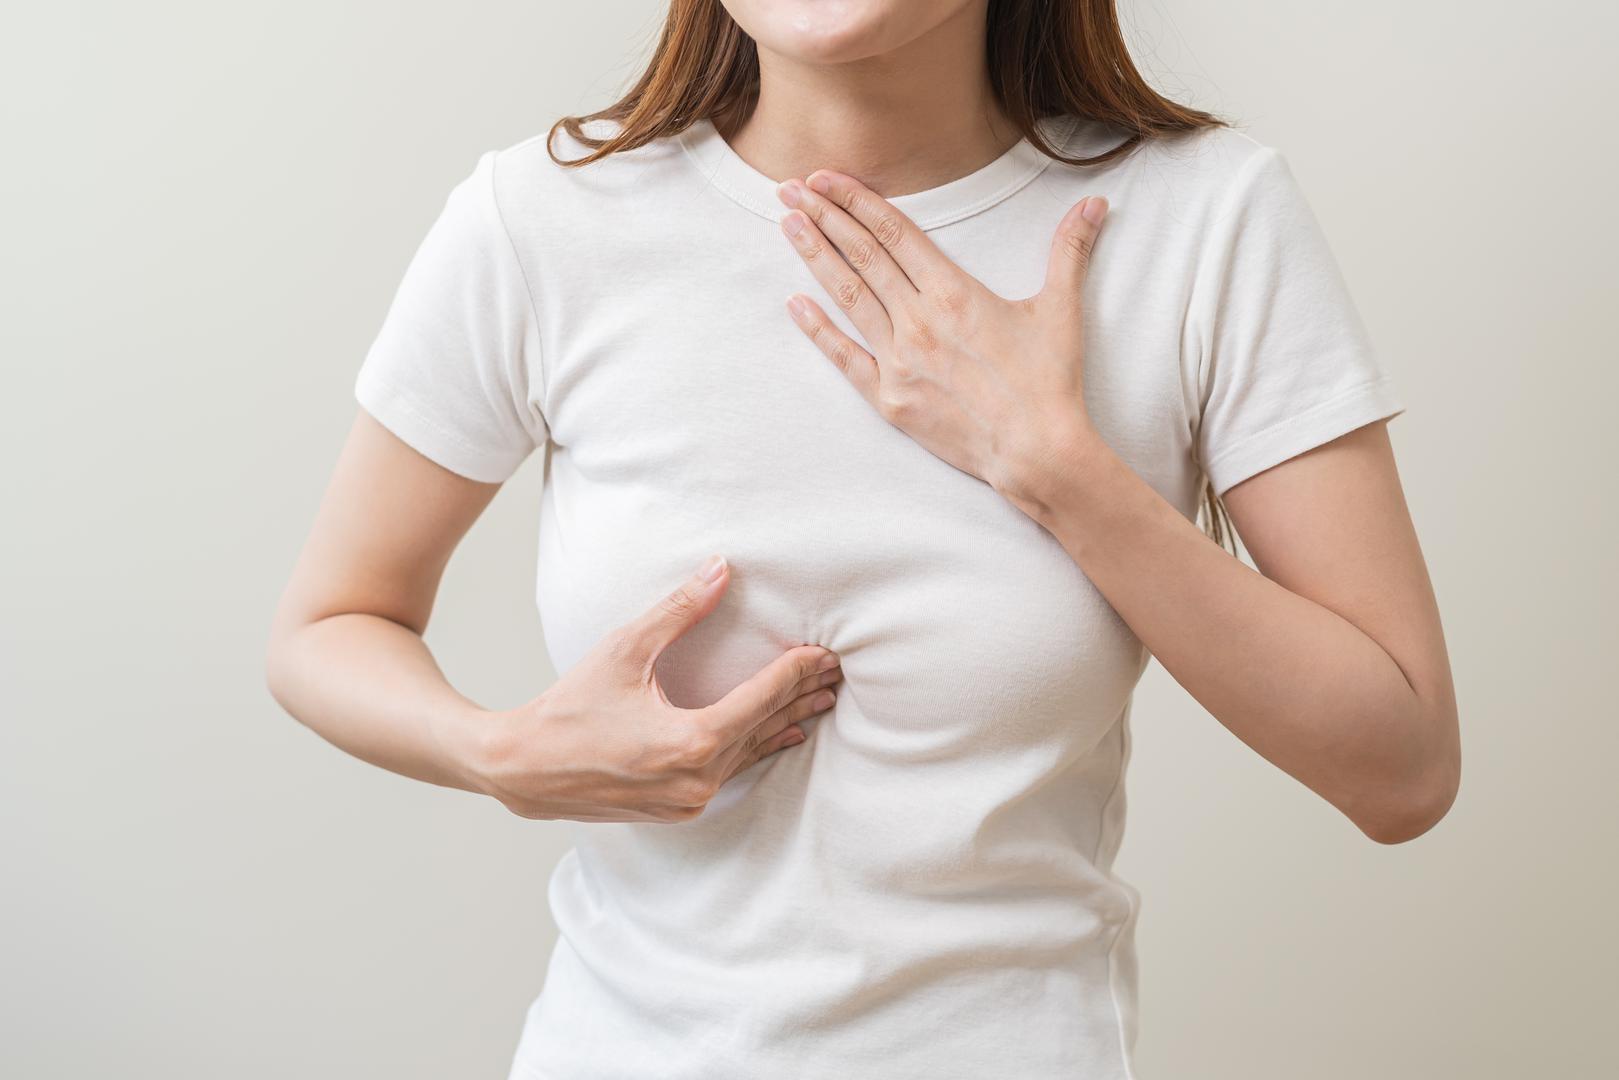 GERB: Gastroezofagealna refluksna bolest (GERB), koja se obično naziva refluks kiseline, još je jedan krivac iza lošeg zadaha. Kada imate refluks kiseline, sadržaj vašeg želuca, poput neprobavljene hrane, povratne žuči i želučane kiseline teče u vaš jednjak. To može dovesti do halitoze s kiselim mirisom. Liječenje želučane kiseline antacidnim lijekovima ili uklanjanje pržene i začinjene hrane iz prehrane, kao i ne jedenje kasno navečer, može pomoći vašem refluksu i zadahu.